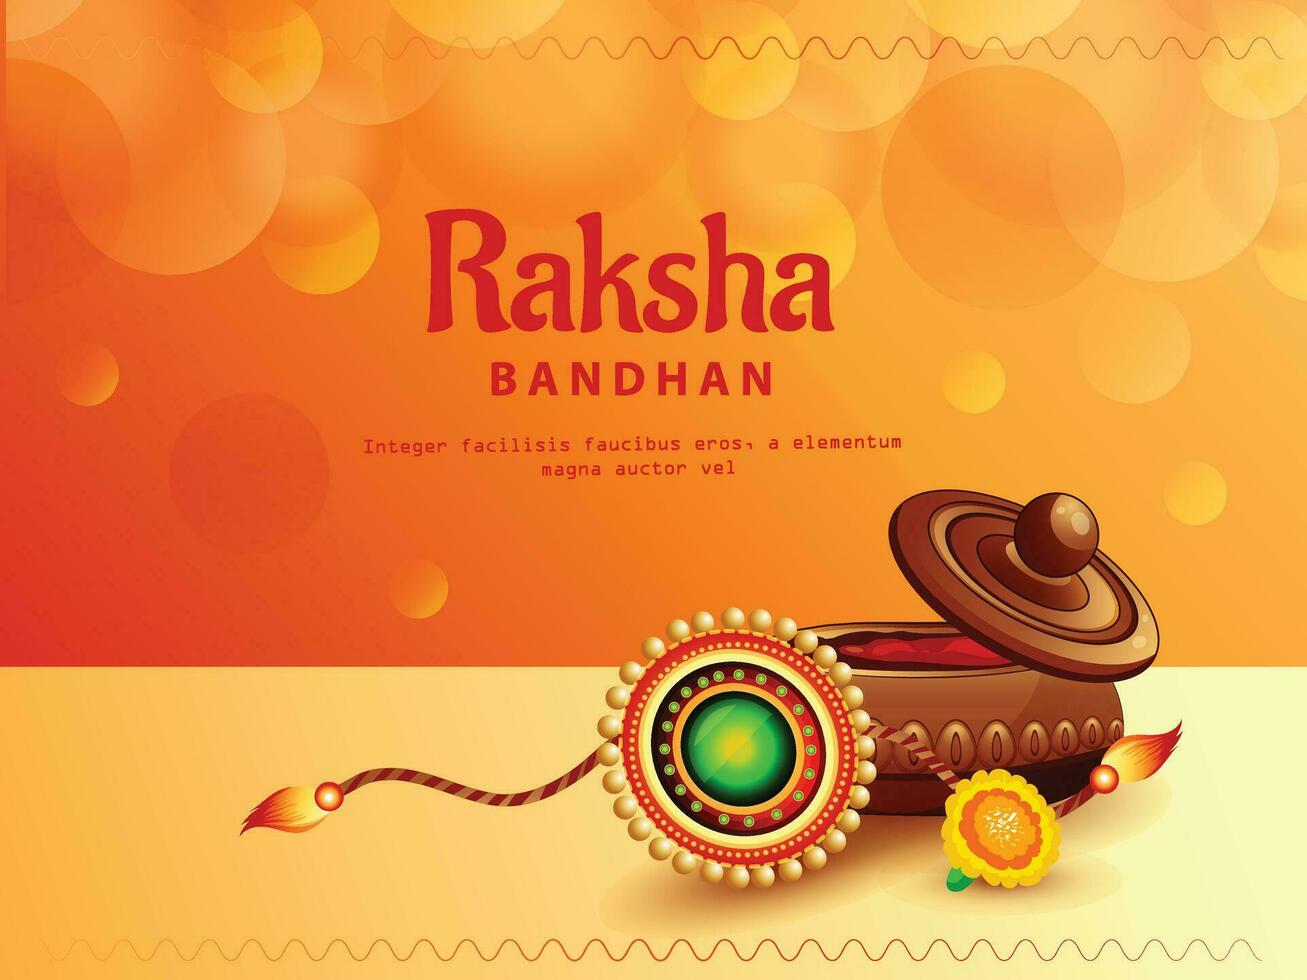 dekoriert Rakhi zum indisch Festival von Bruder und Schwester Verbindung Feier Raksha Bandhan Vorlage Design mit nett Illustration im ein kreativ Hintergrund Vektor, Banner vektor